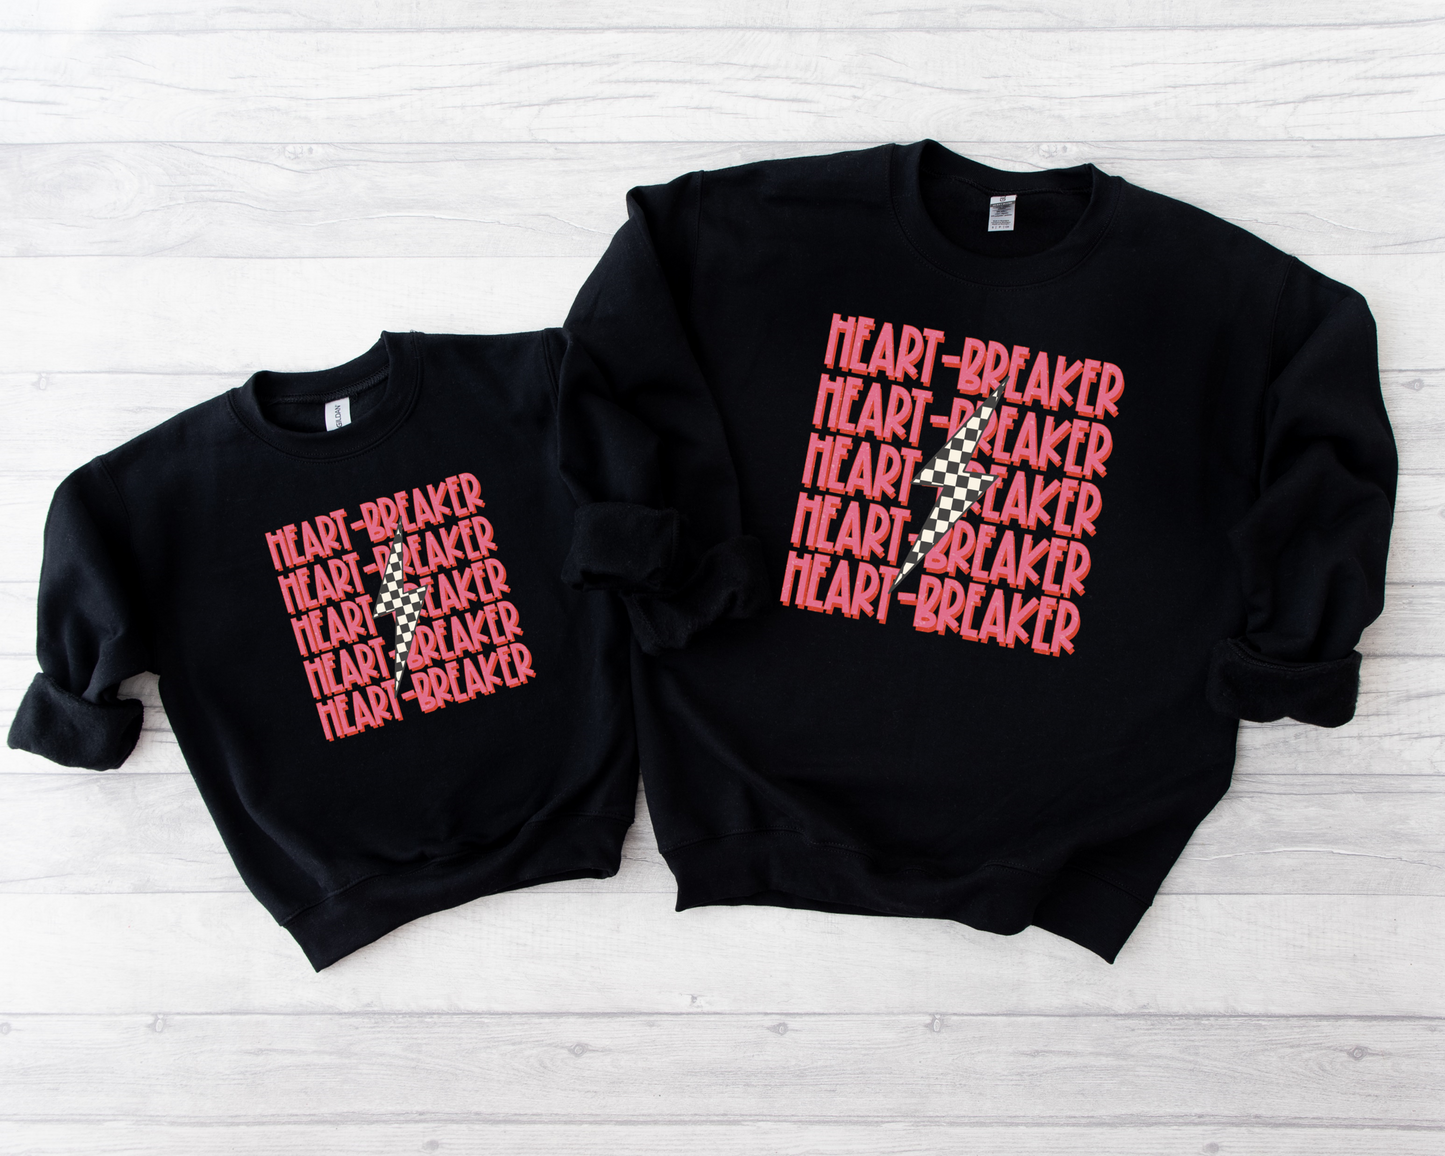 Heartbreaker Sweatshirts- Set of 2